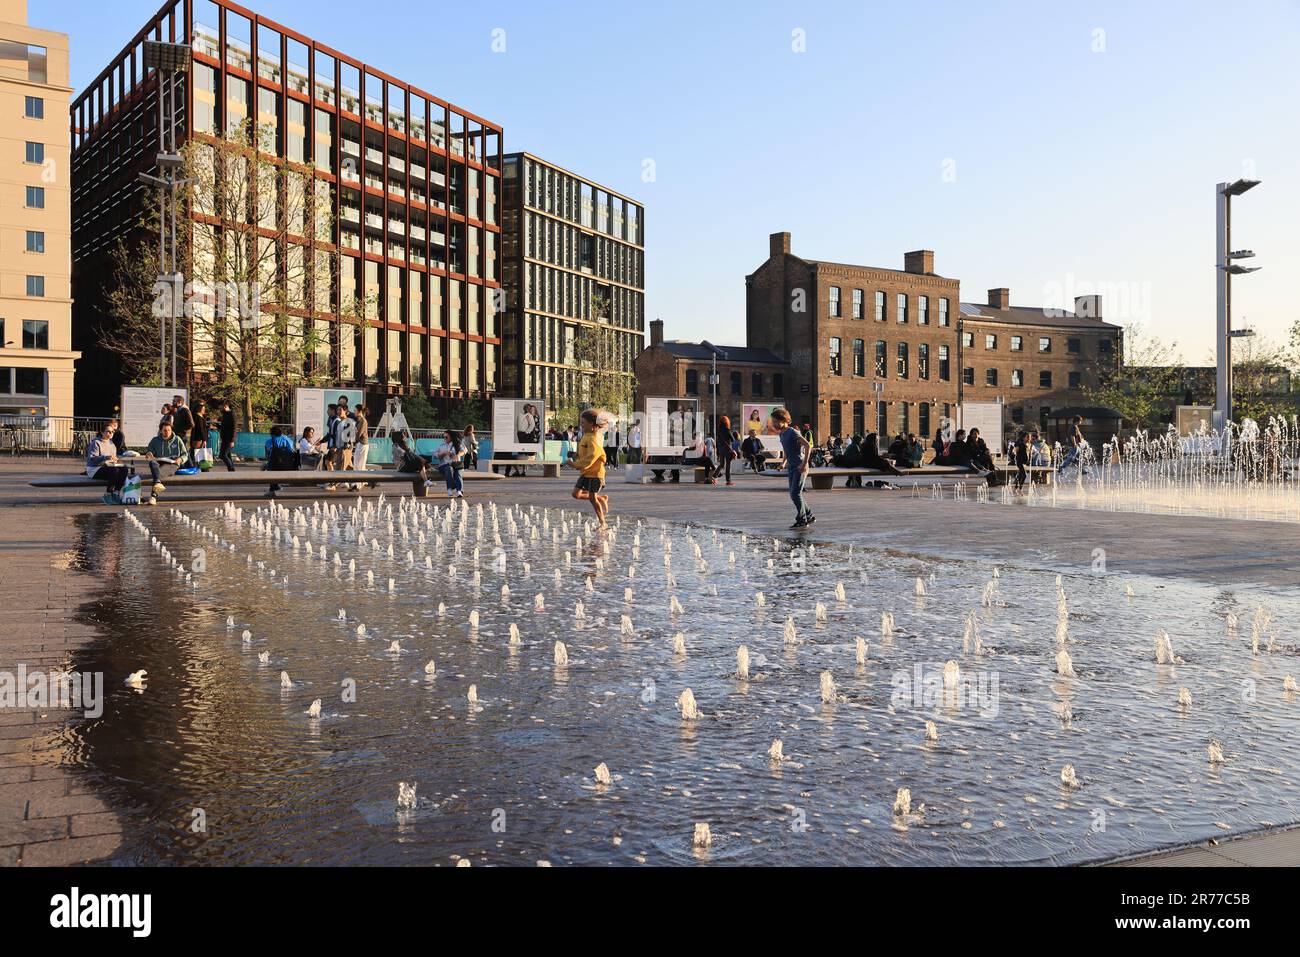 Profitez du soleil sur les fontaines de Granary Square, à Kings Cross, au nord de Londres, au Royaume-Uni Banque D'Images